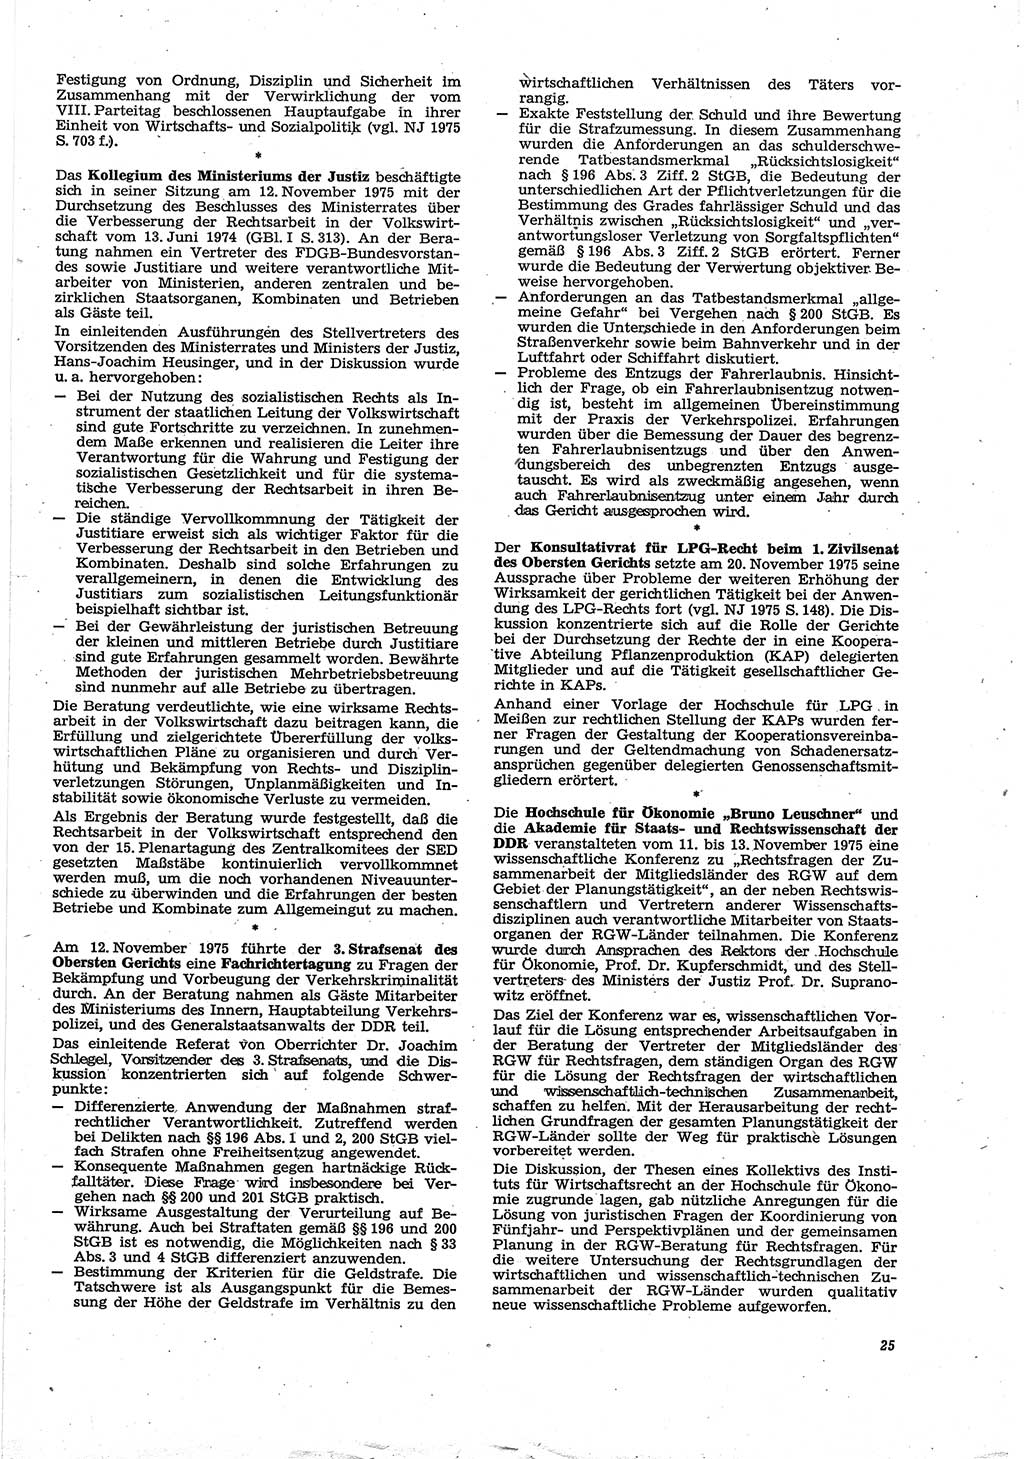 Neue Justiz (NJ), Zeitschrift für Recht und Rechtswissenschaft [Deutsche Demokratische Republik (DDR)], 30. Jahrgang 1976, Seite 25 (NJ DDR 1976, S. 25)